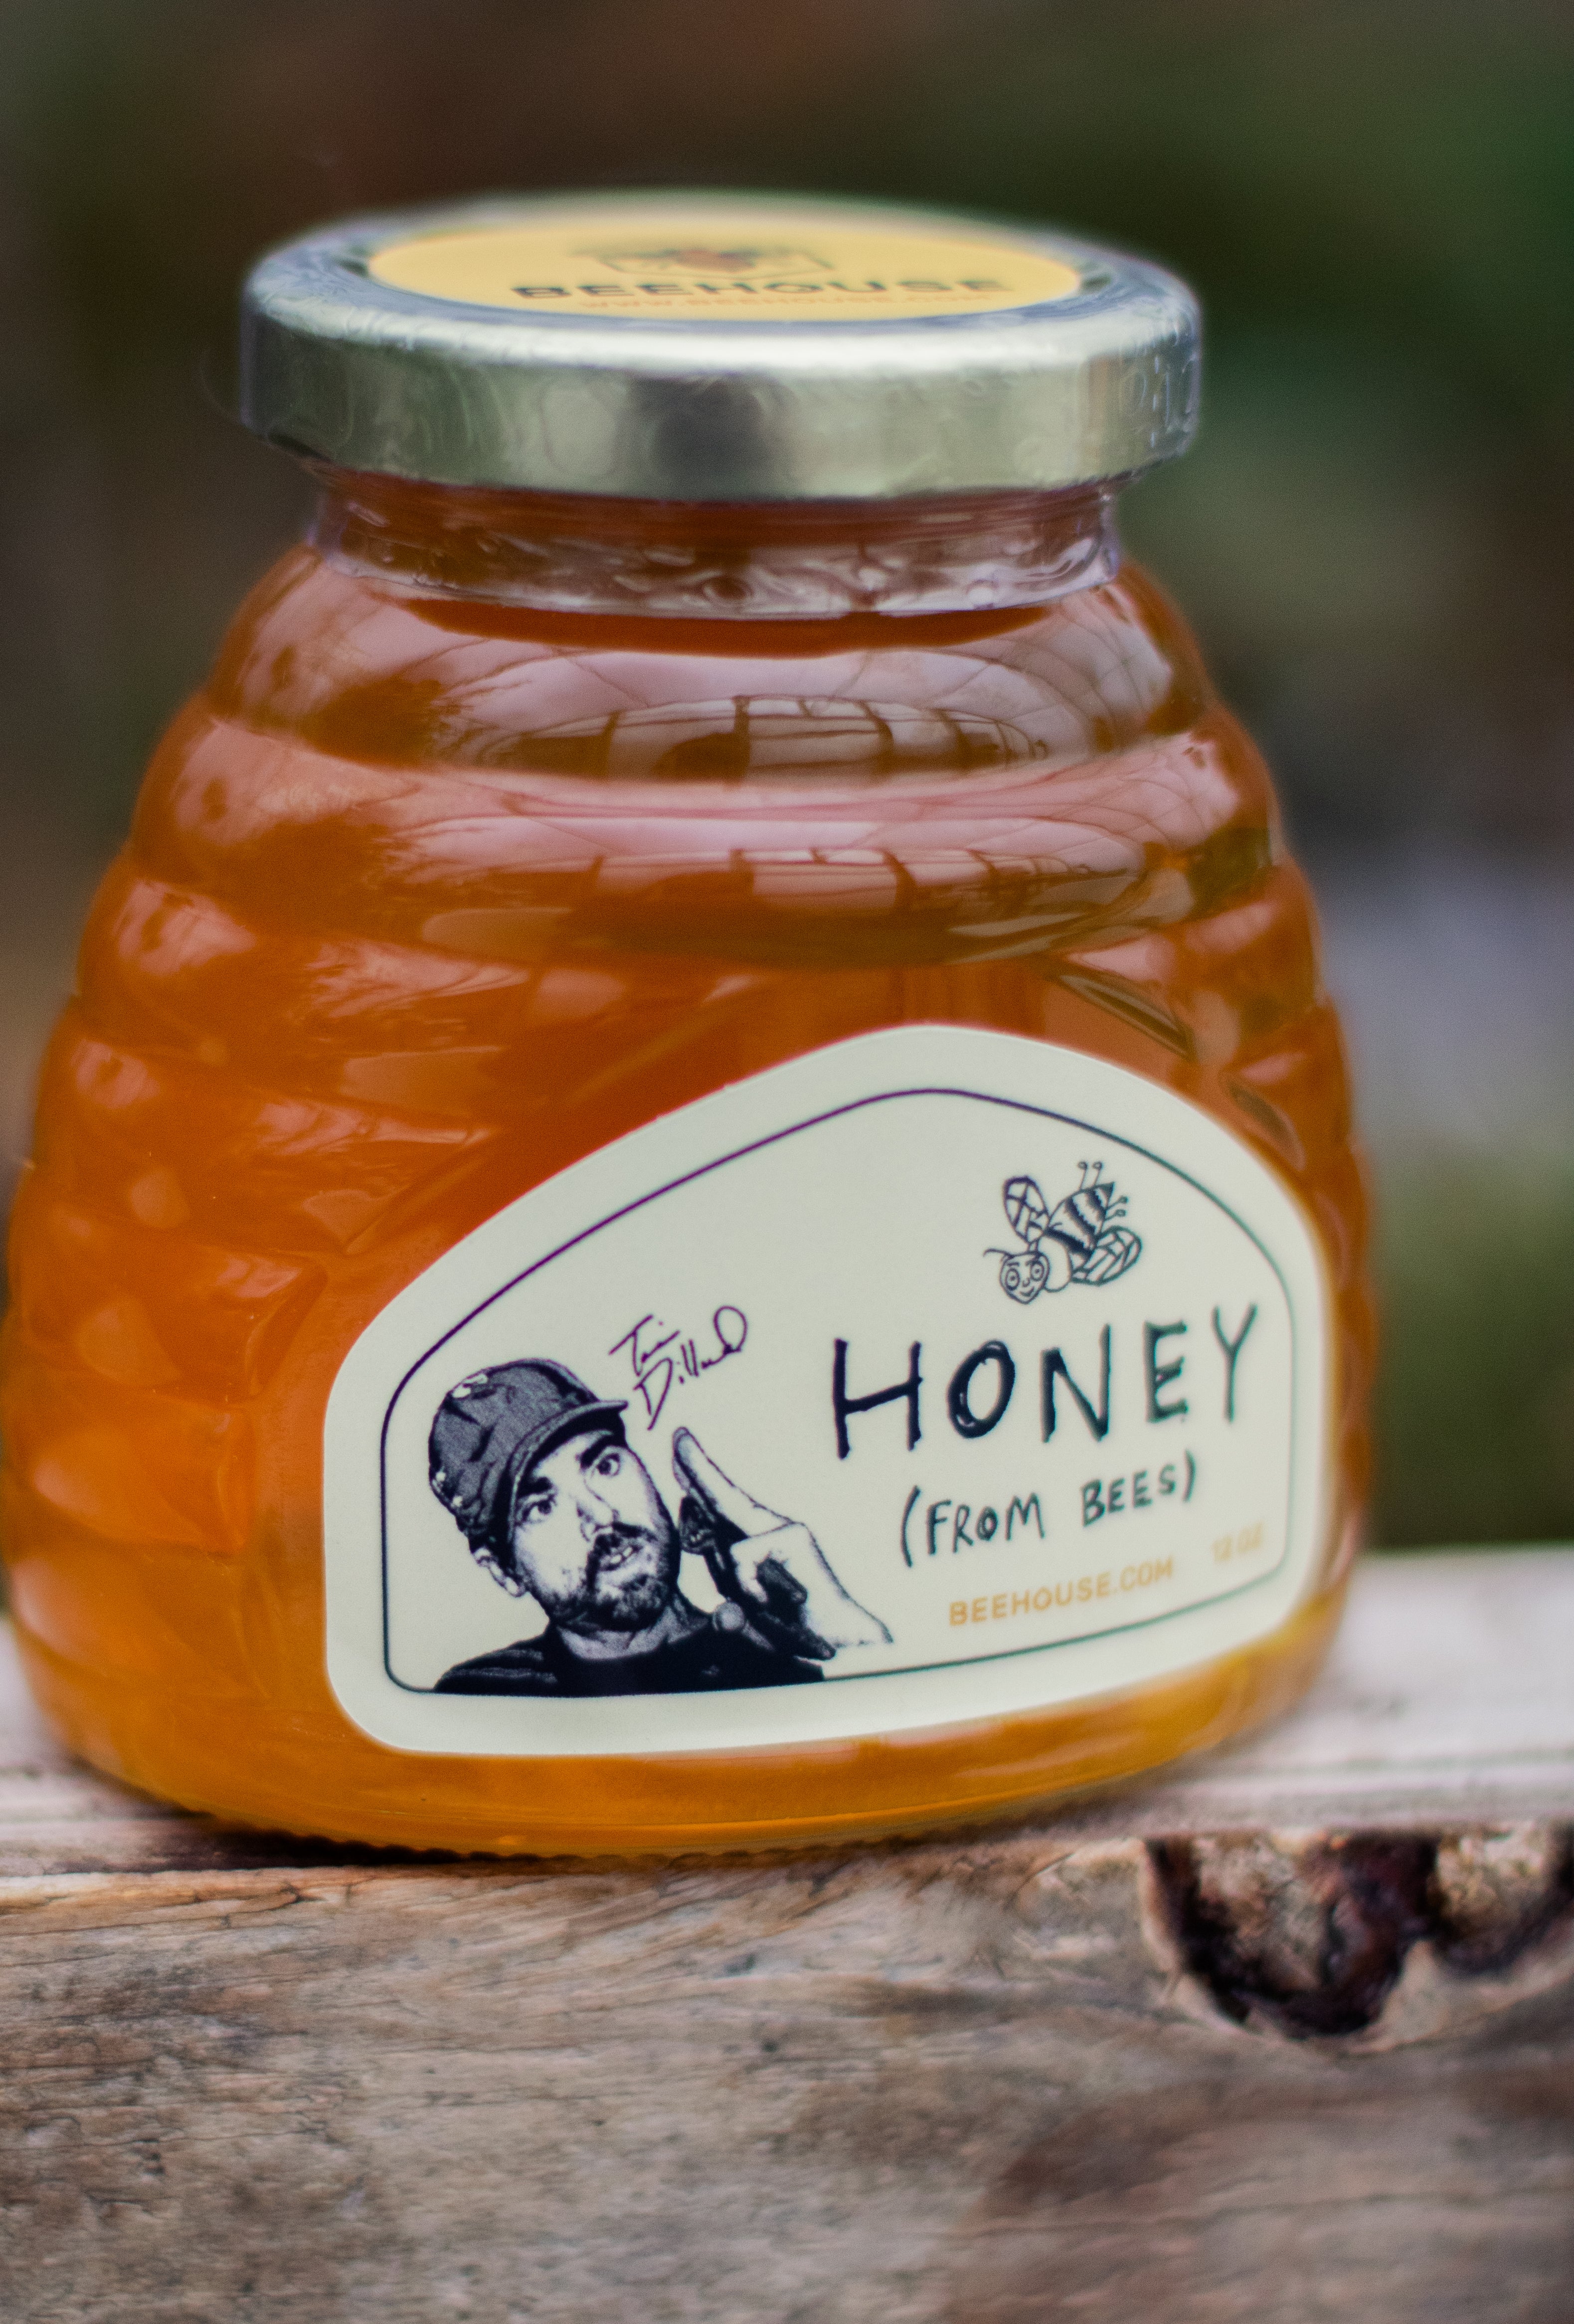 Tavin Dillard's Honey From Bees